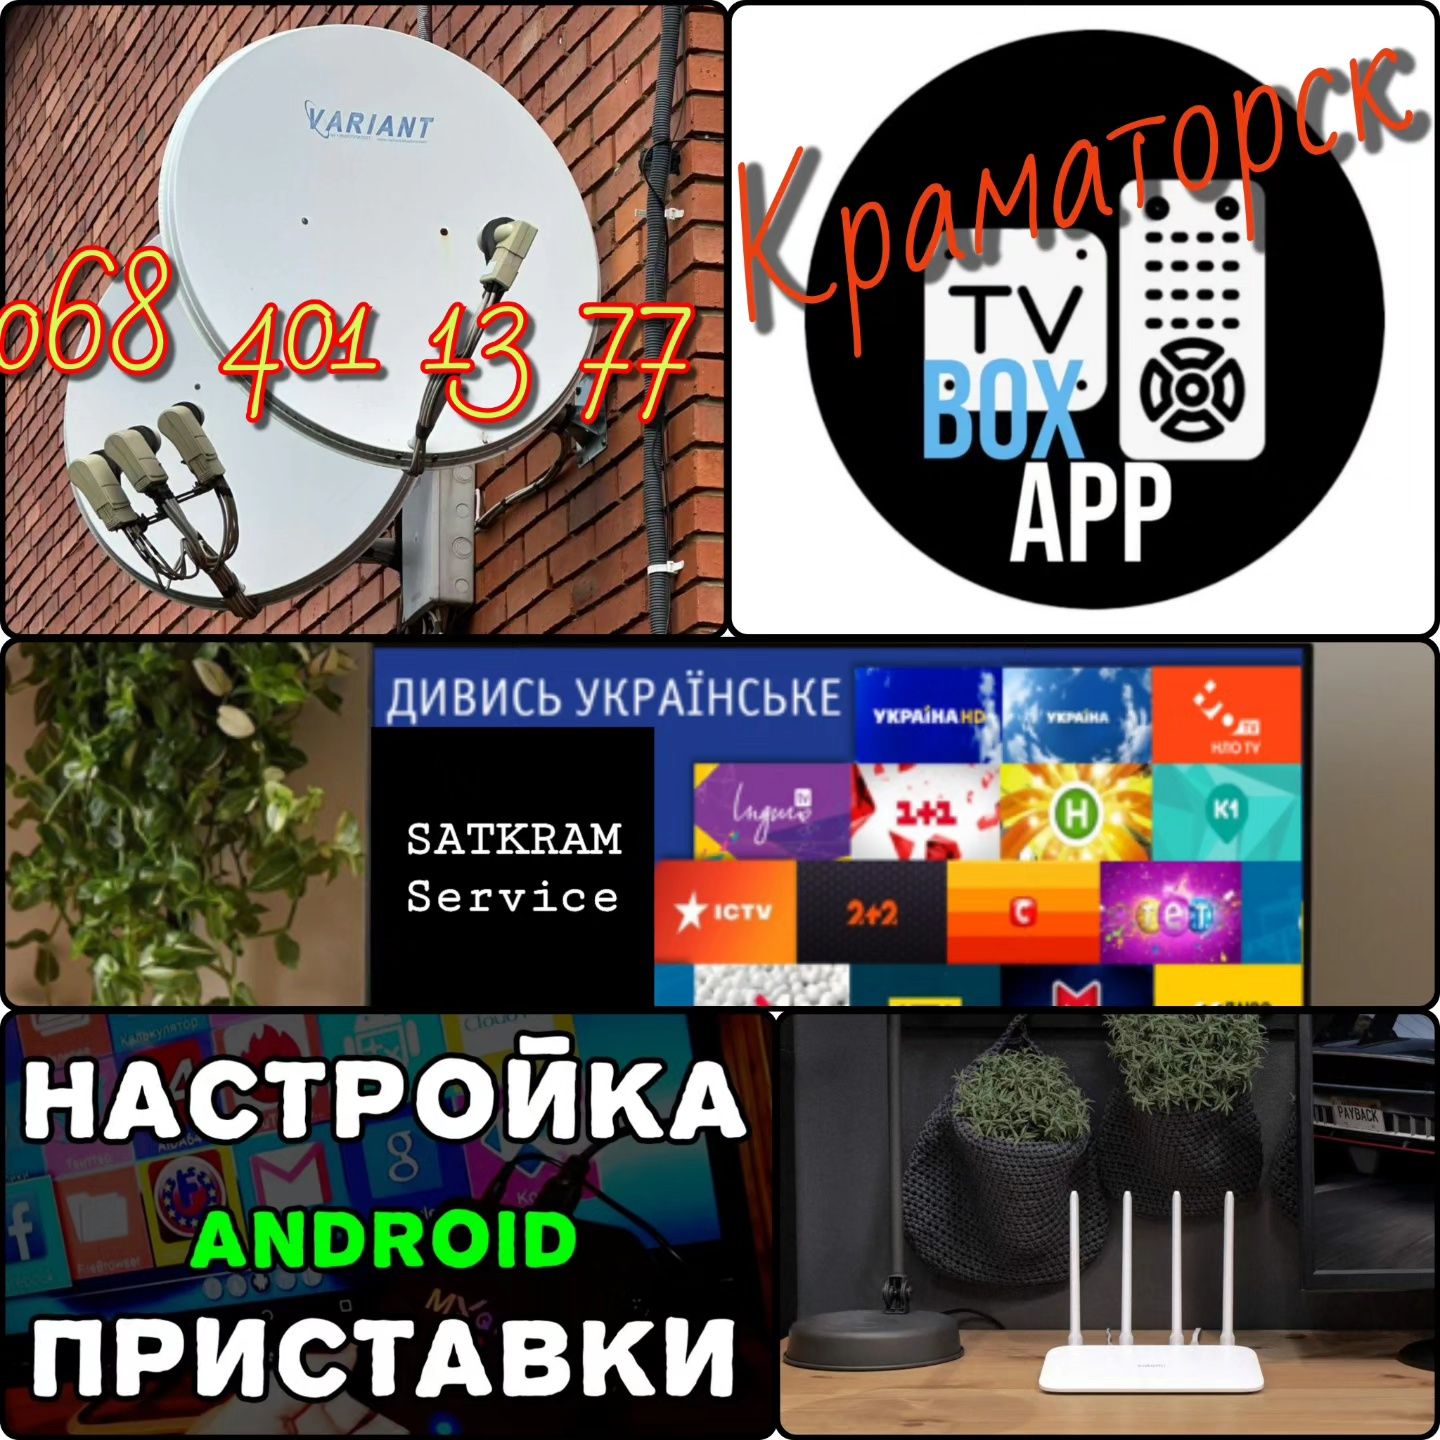 Украинское спутниковое, эфирное ТВ, смарт-приставки